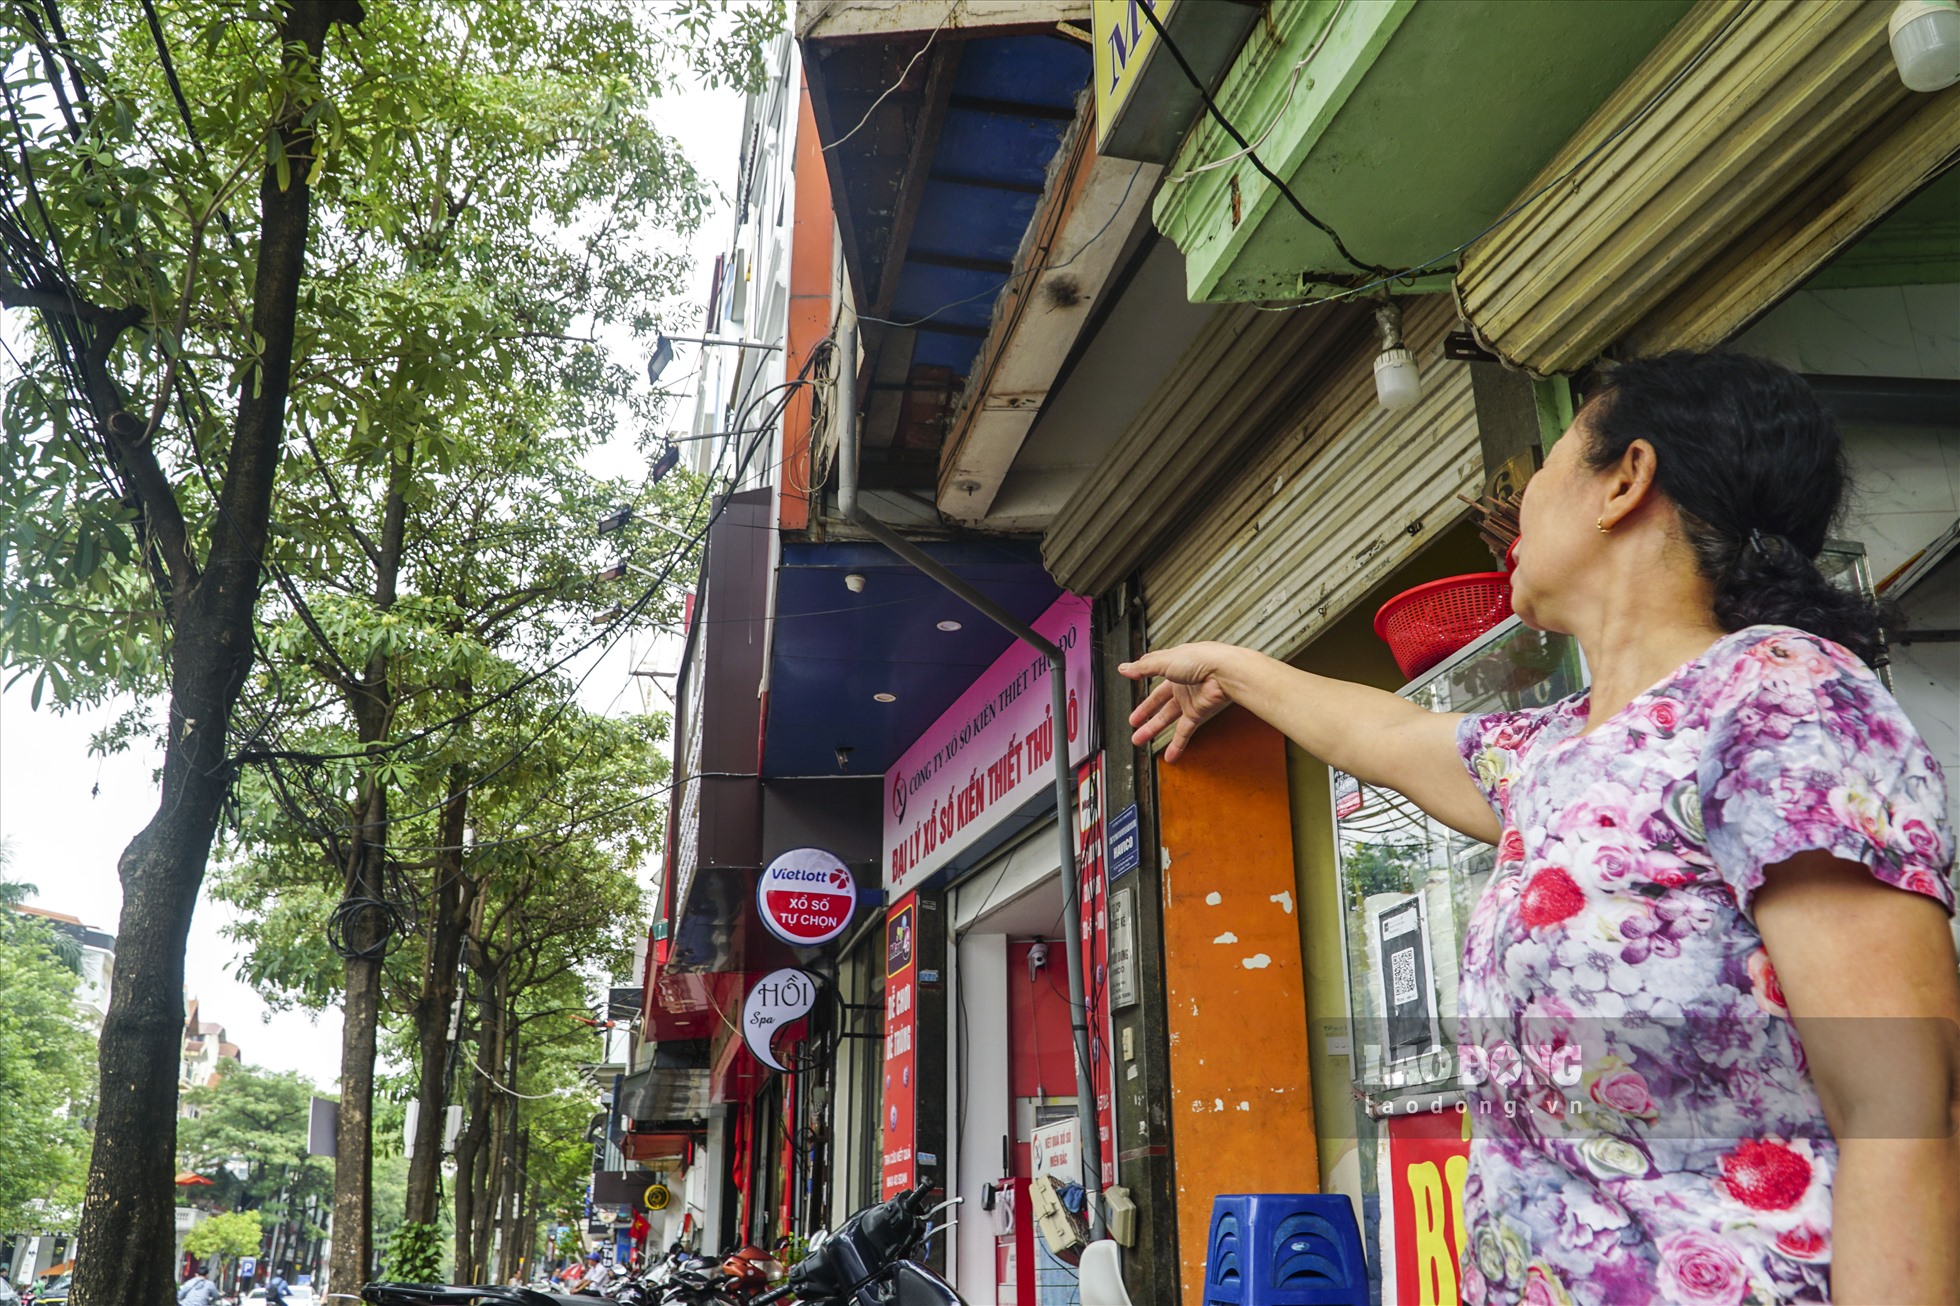 Trao đổi với phóng viên, bà Đỗ Phú Thái – kinh doanh quán ăn trên phố Trung Hòa gần 20 năm nay cho biết, cây hoa sữa được trồng trên phố này đã hơn 10 năm, sức sống khỏe, xanh tốt và hiếm khi thấy người dân phản ứng vì mùi hương đậm đặc.